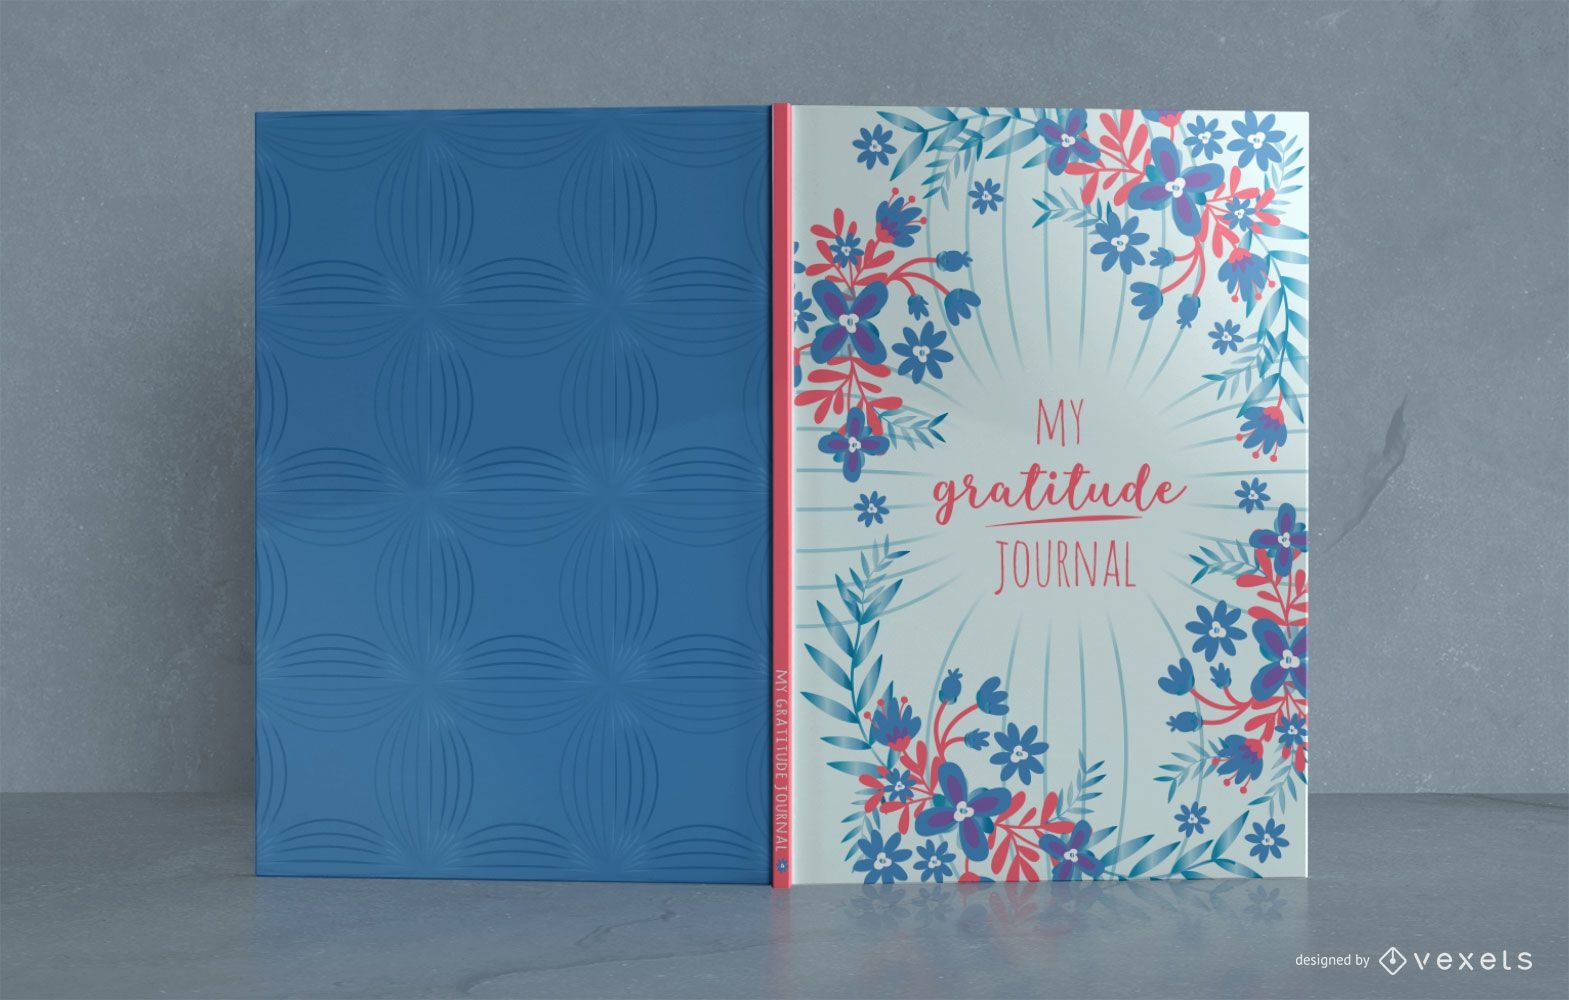 Design des floralen Dankbarkeit Journal-Bucheinbands